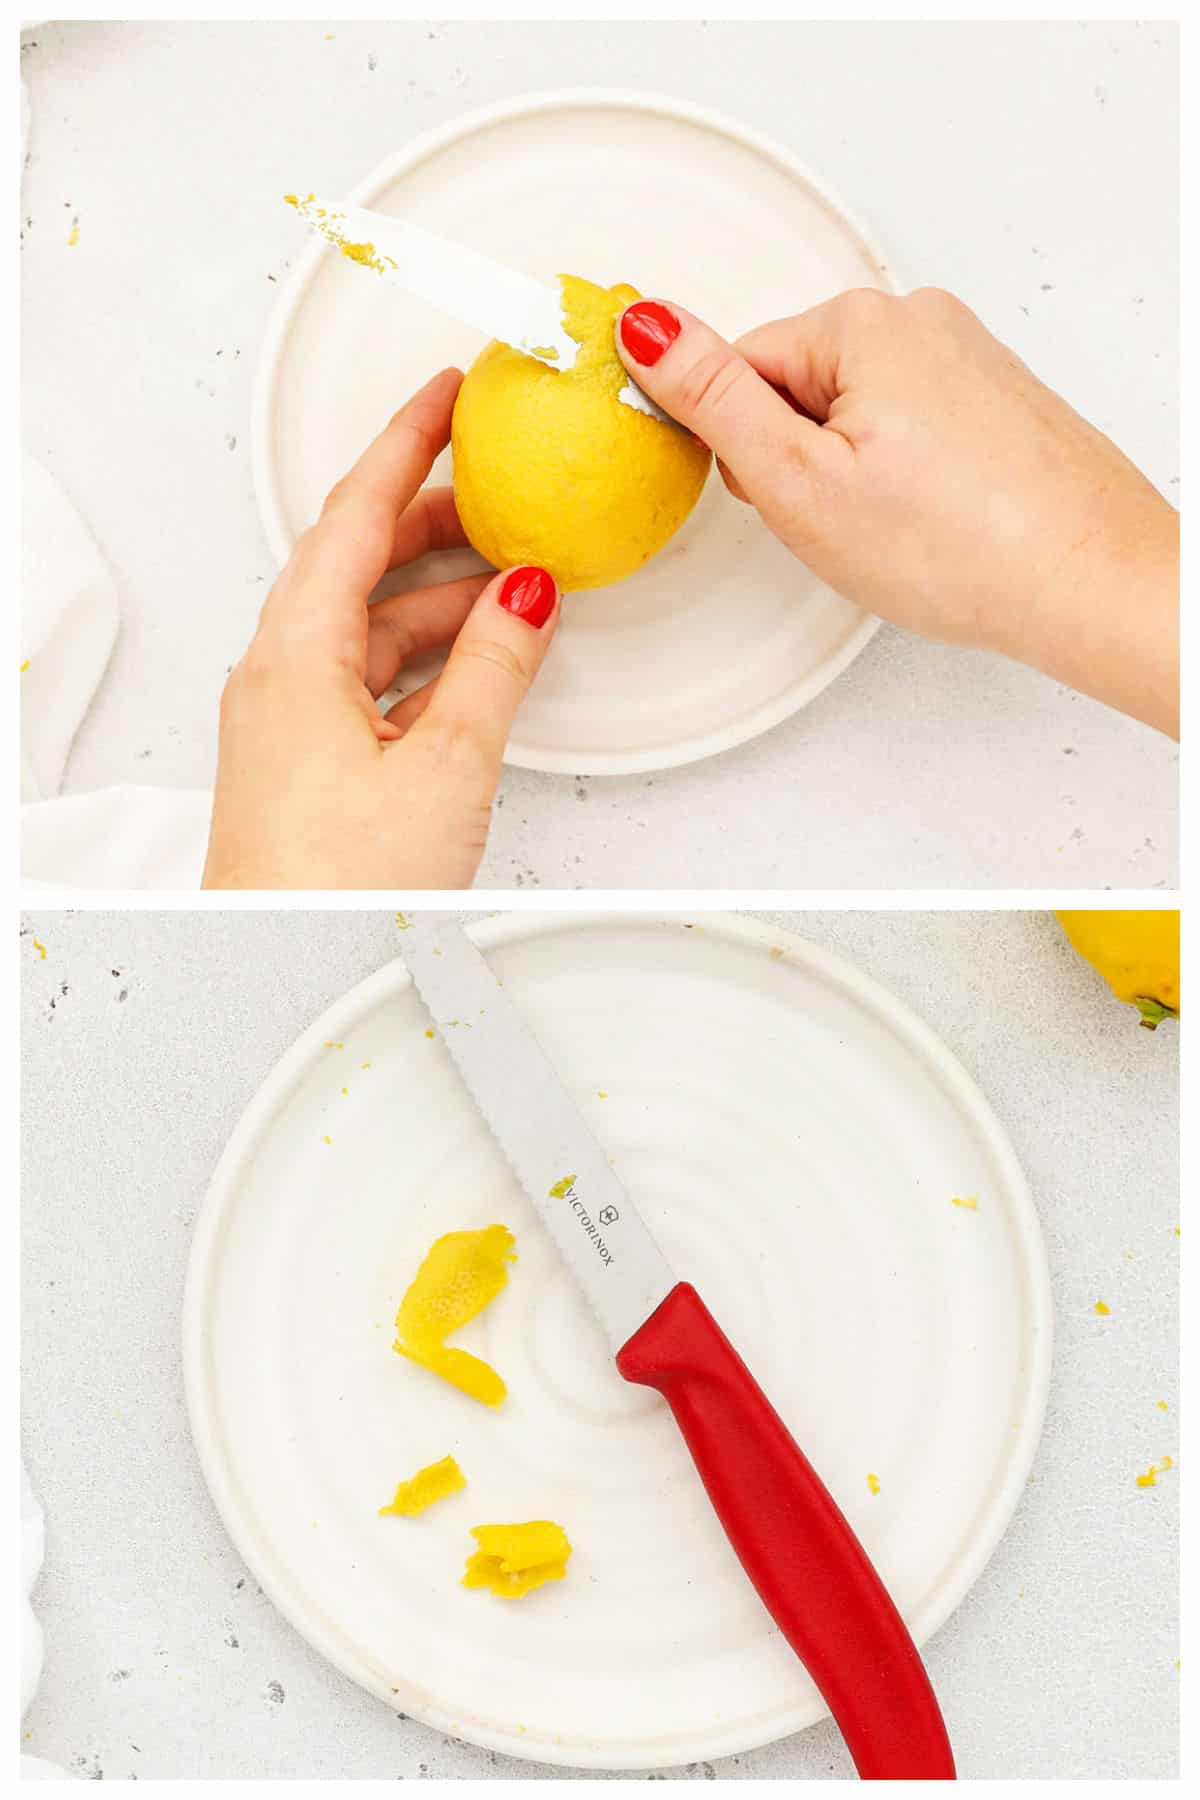 zesting a lemon with a knife